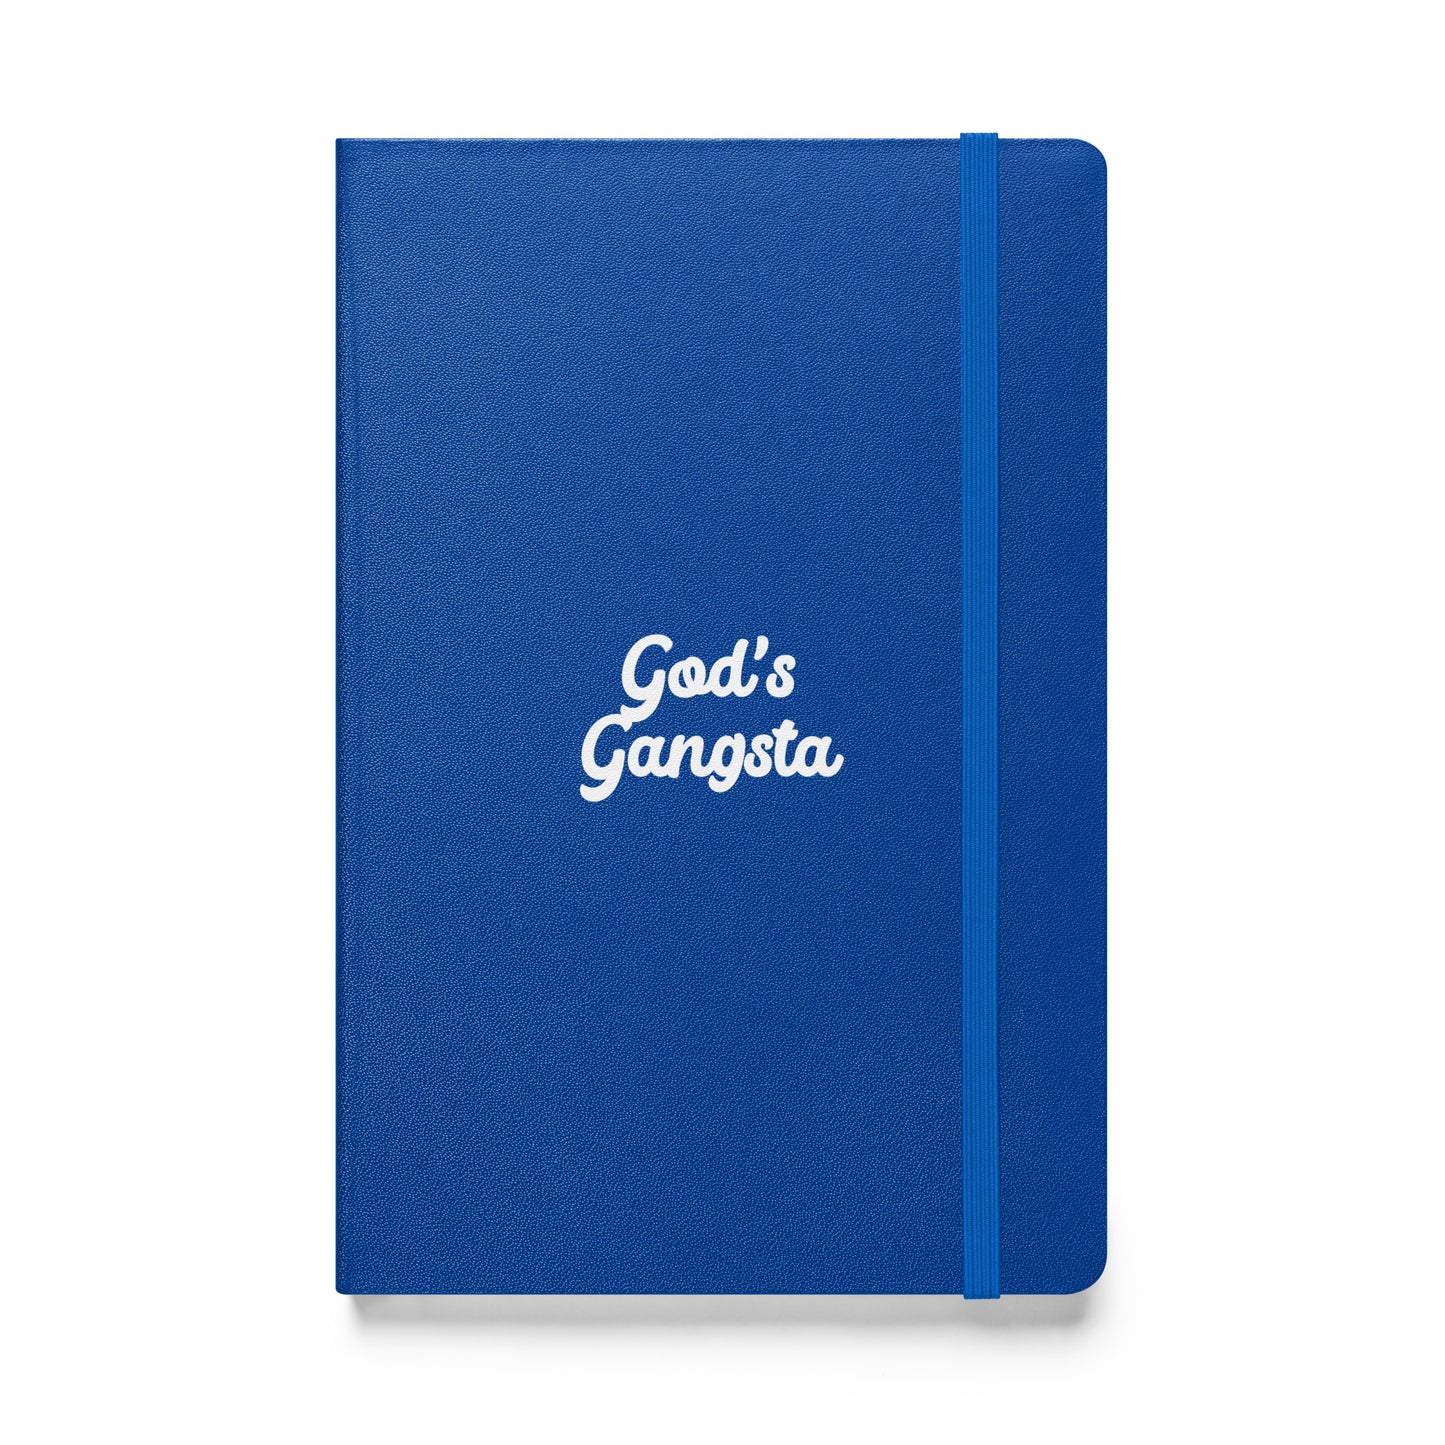 God's Gangsta bound notebook